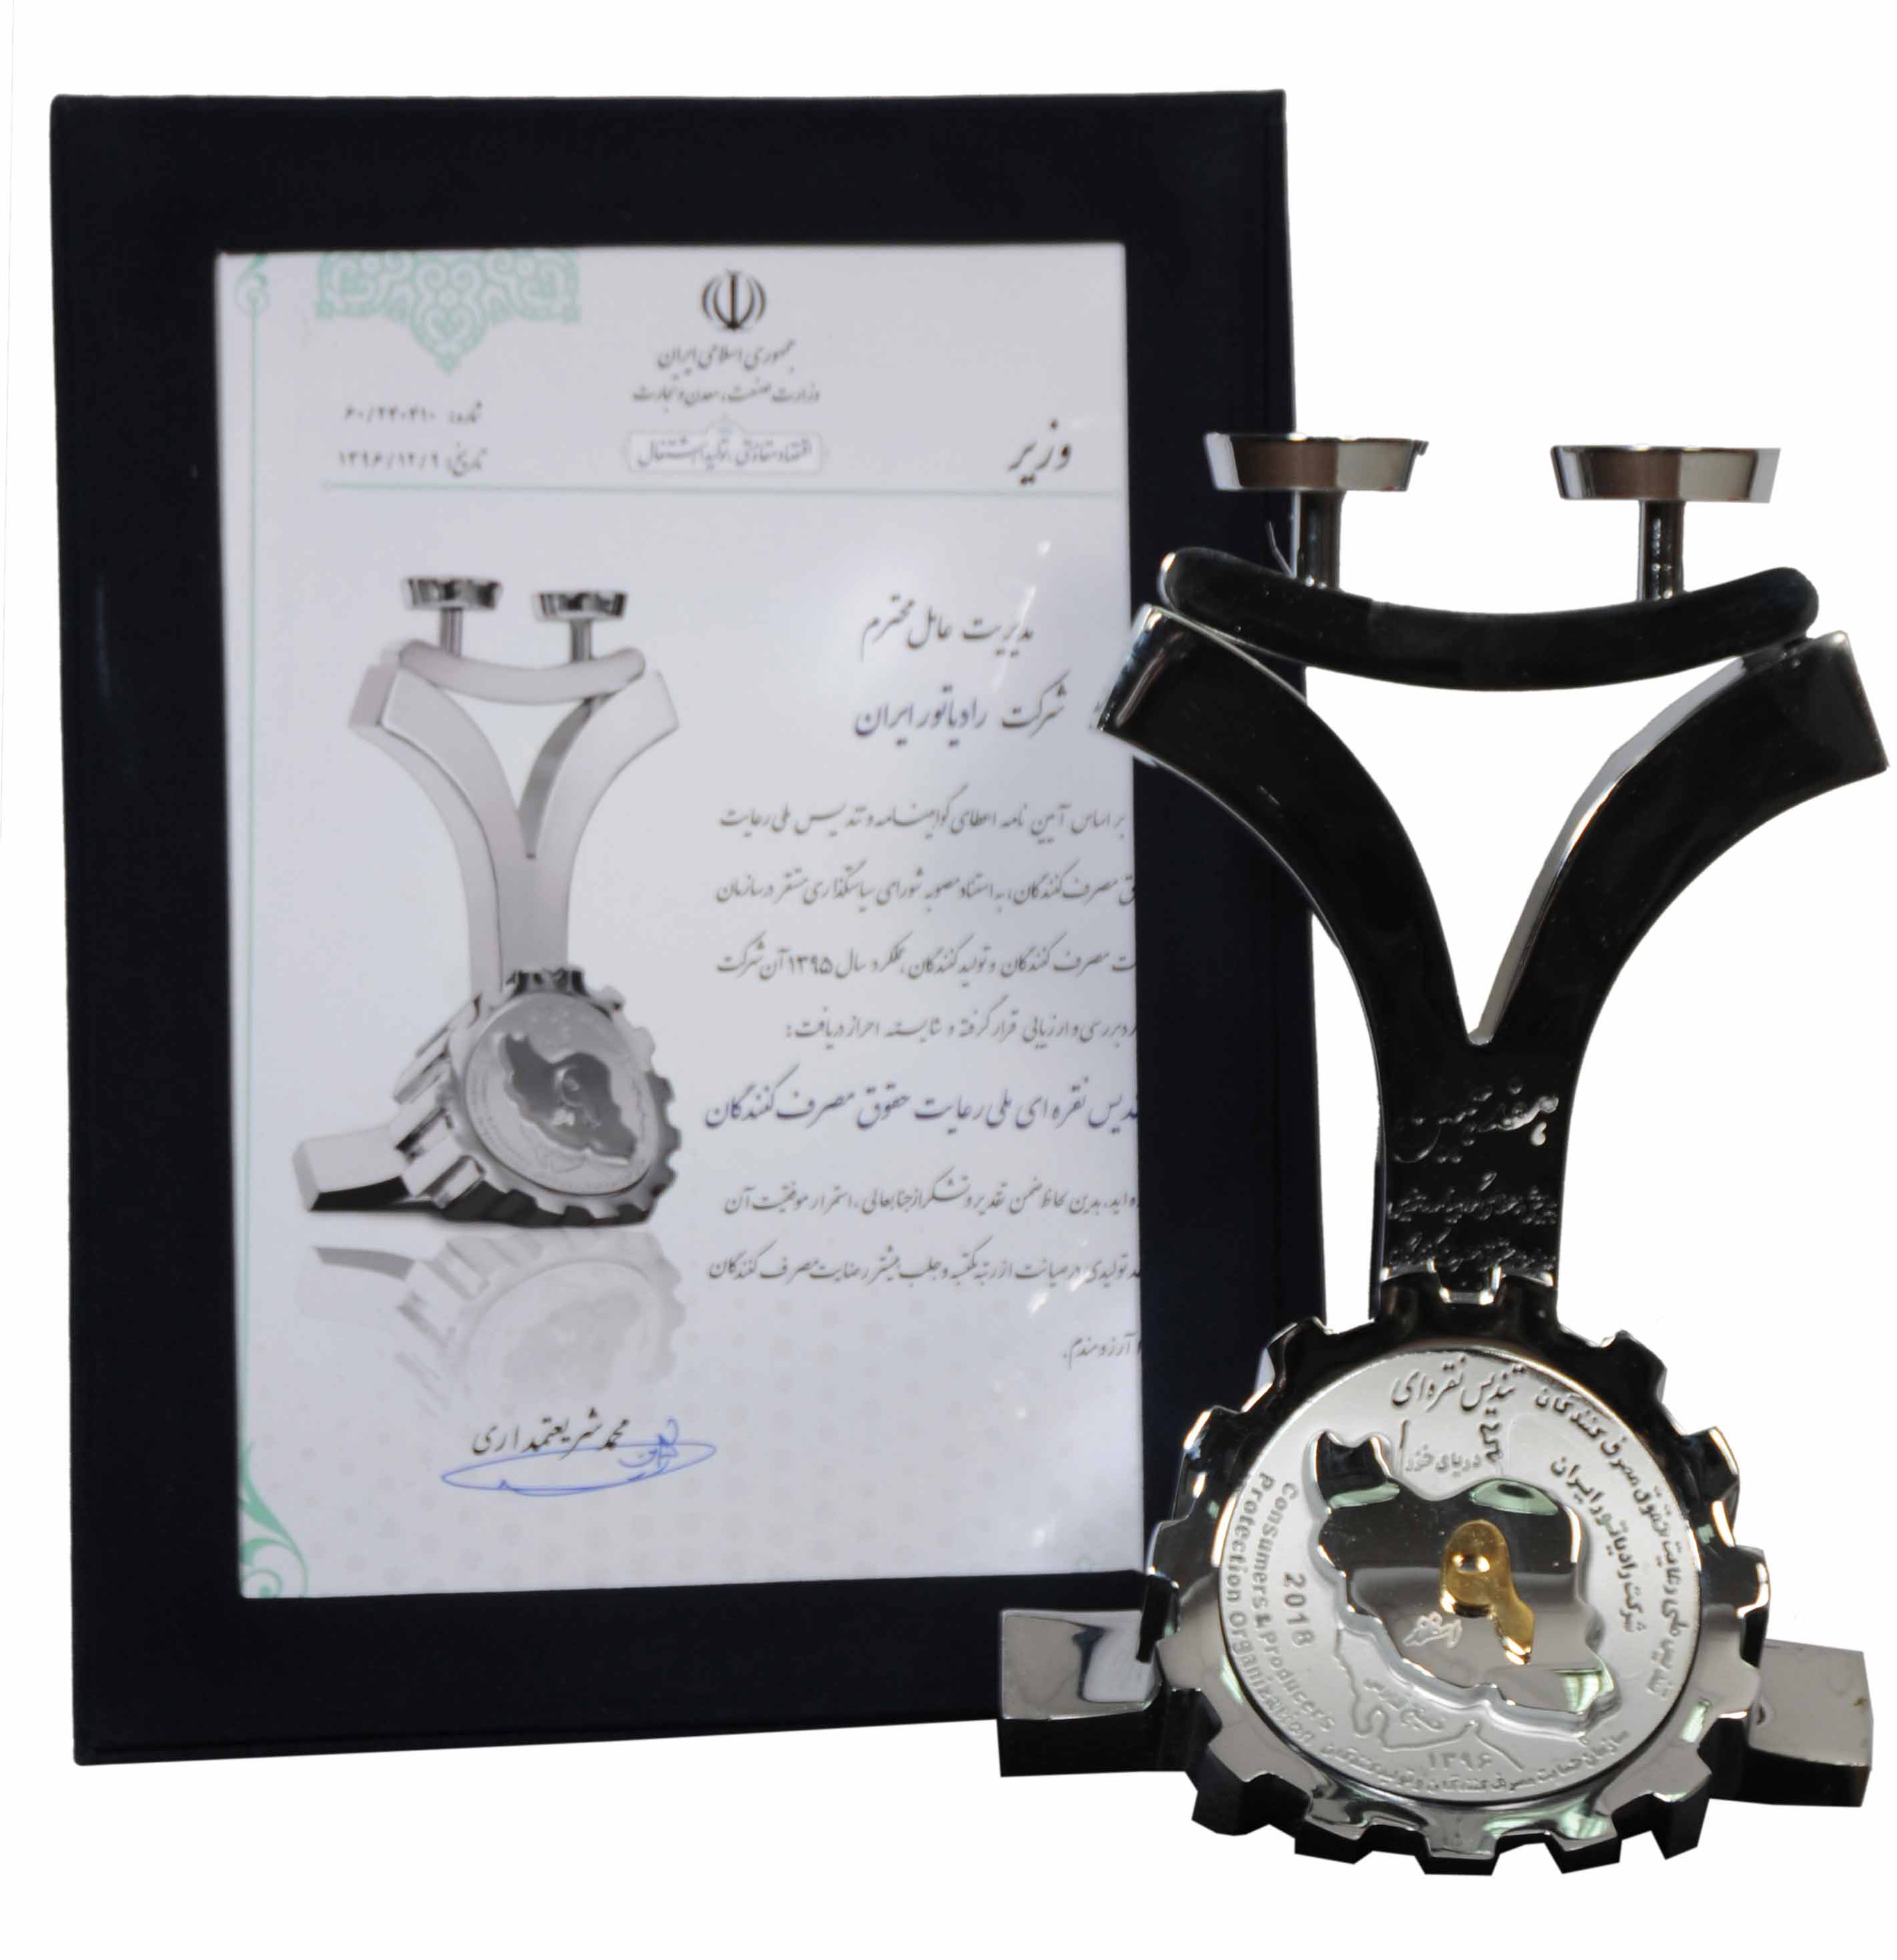 شرکت رادیاتور ایران موفق به دریافت تندیس نقره ای از  سازمان حمایت از مصرف کنندگان شد